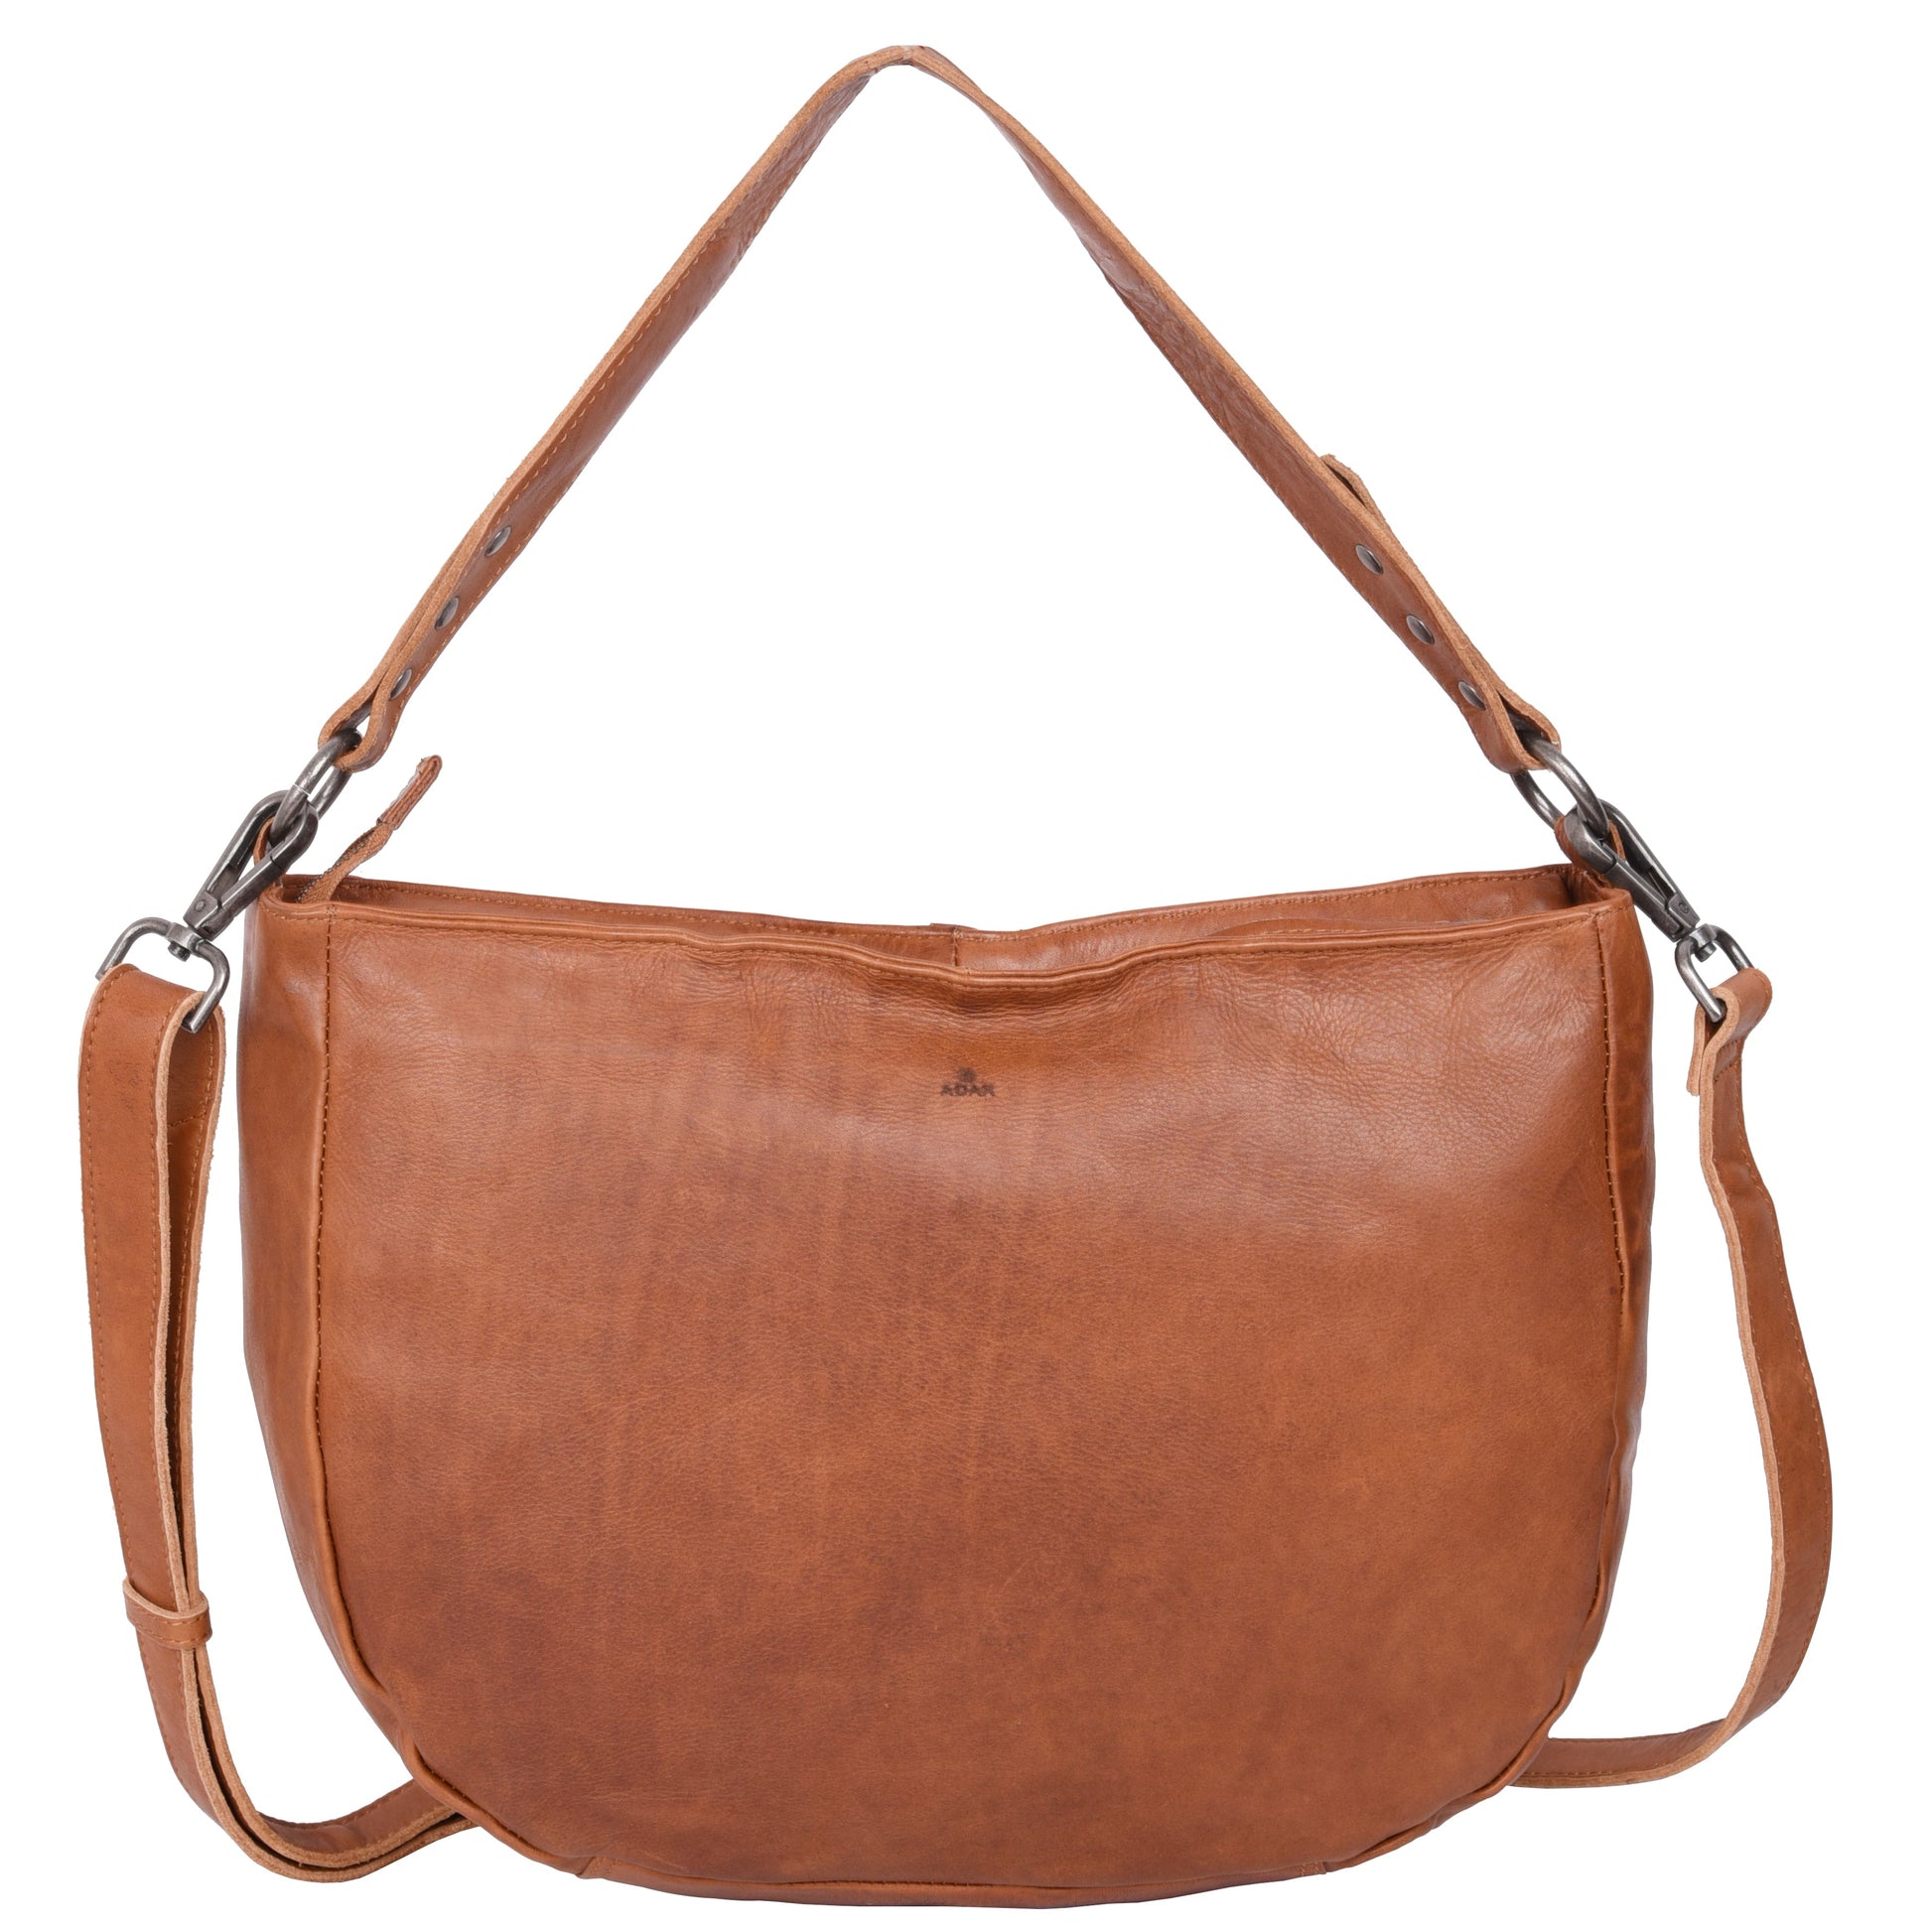 Damenhandtasche 130127 von Adax - Laure Bags and Travel